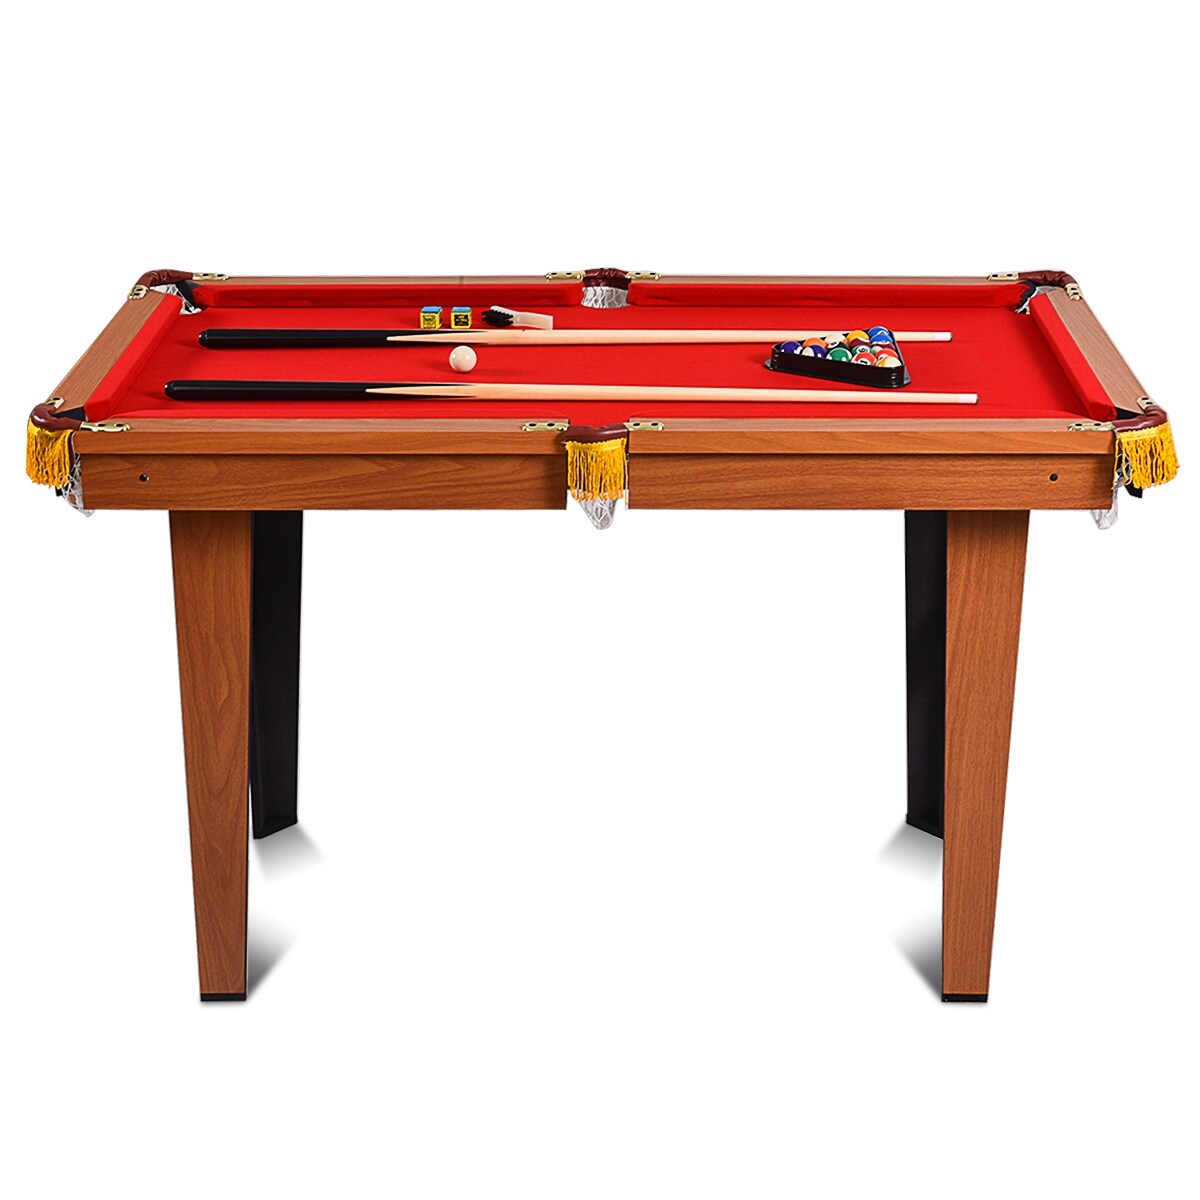 Costway 48'' Mini Table Top Pool Table Game Billiard Set Cues Balls - 48''L x 26''W x 30''H